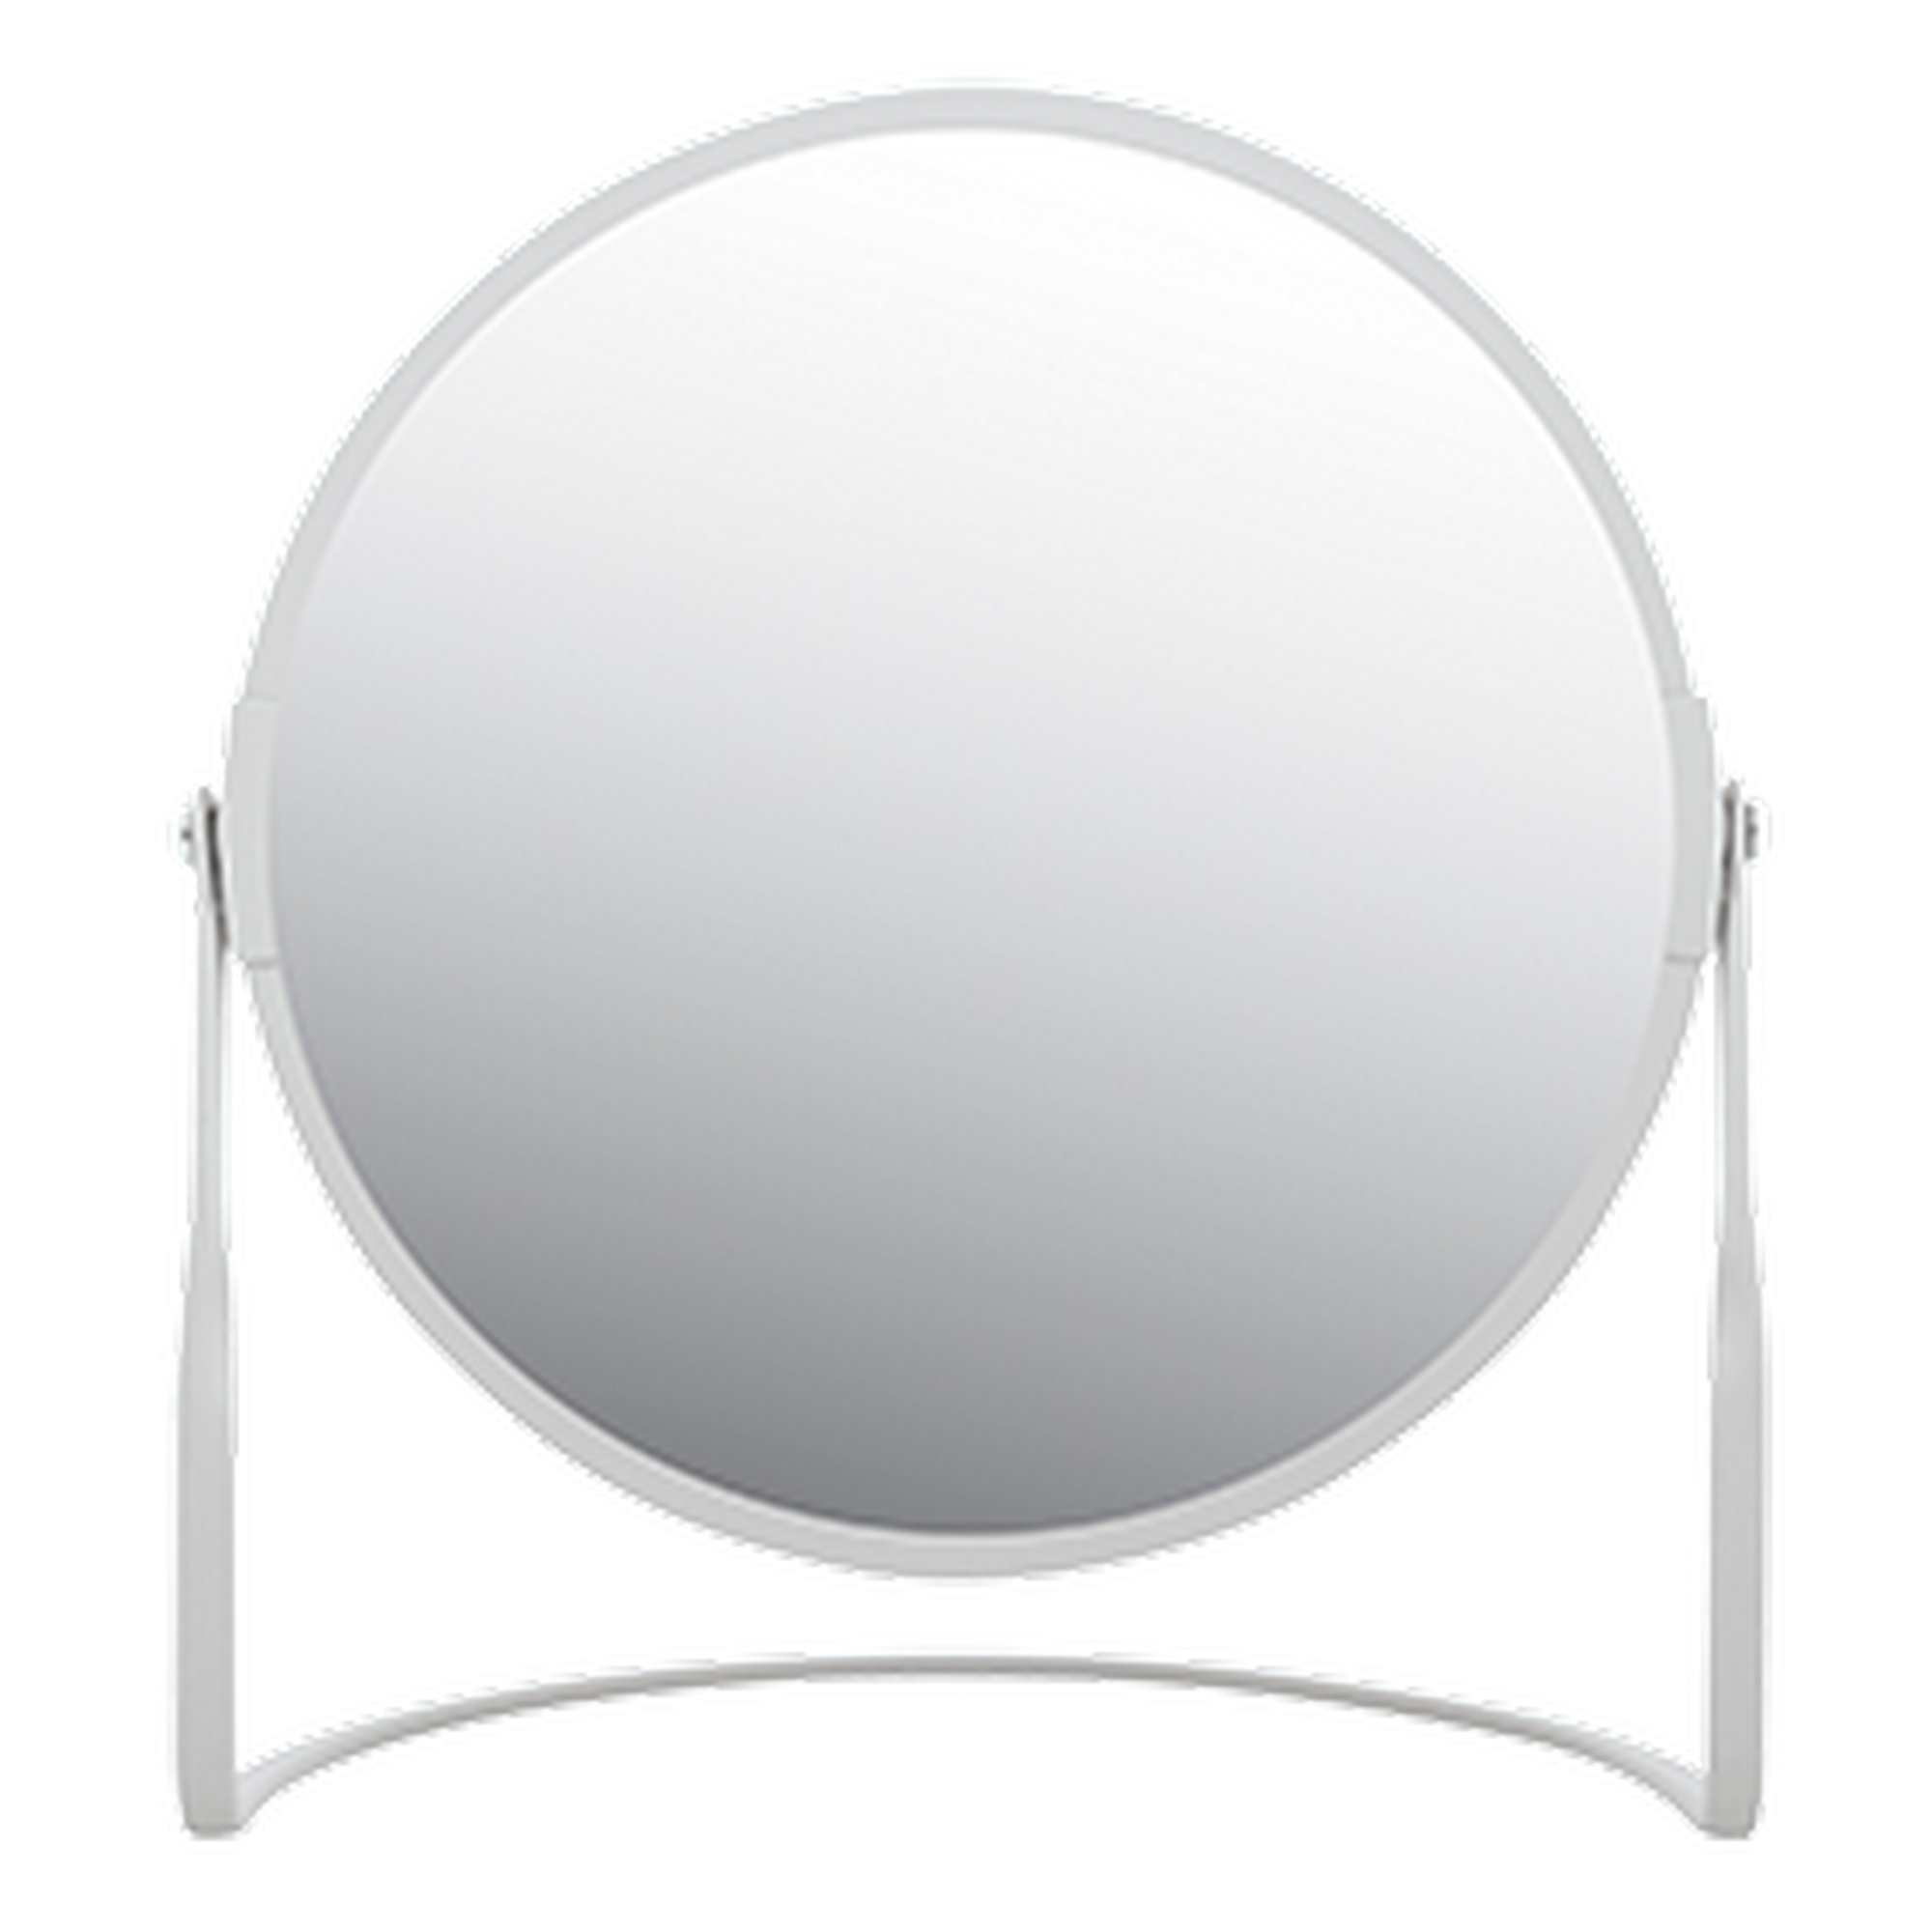 Standspiegel 'Akira' weiß Ø 18,4 cm, mit 5-fach Vergrößerung + product picture